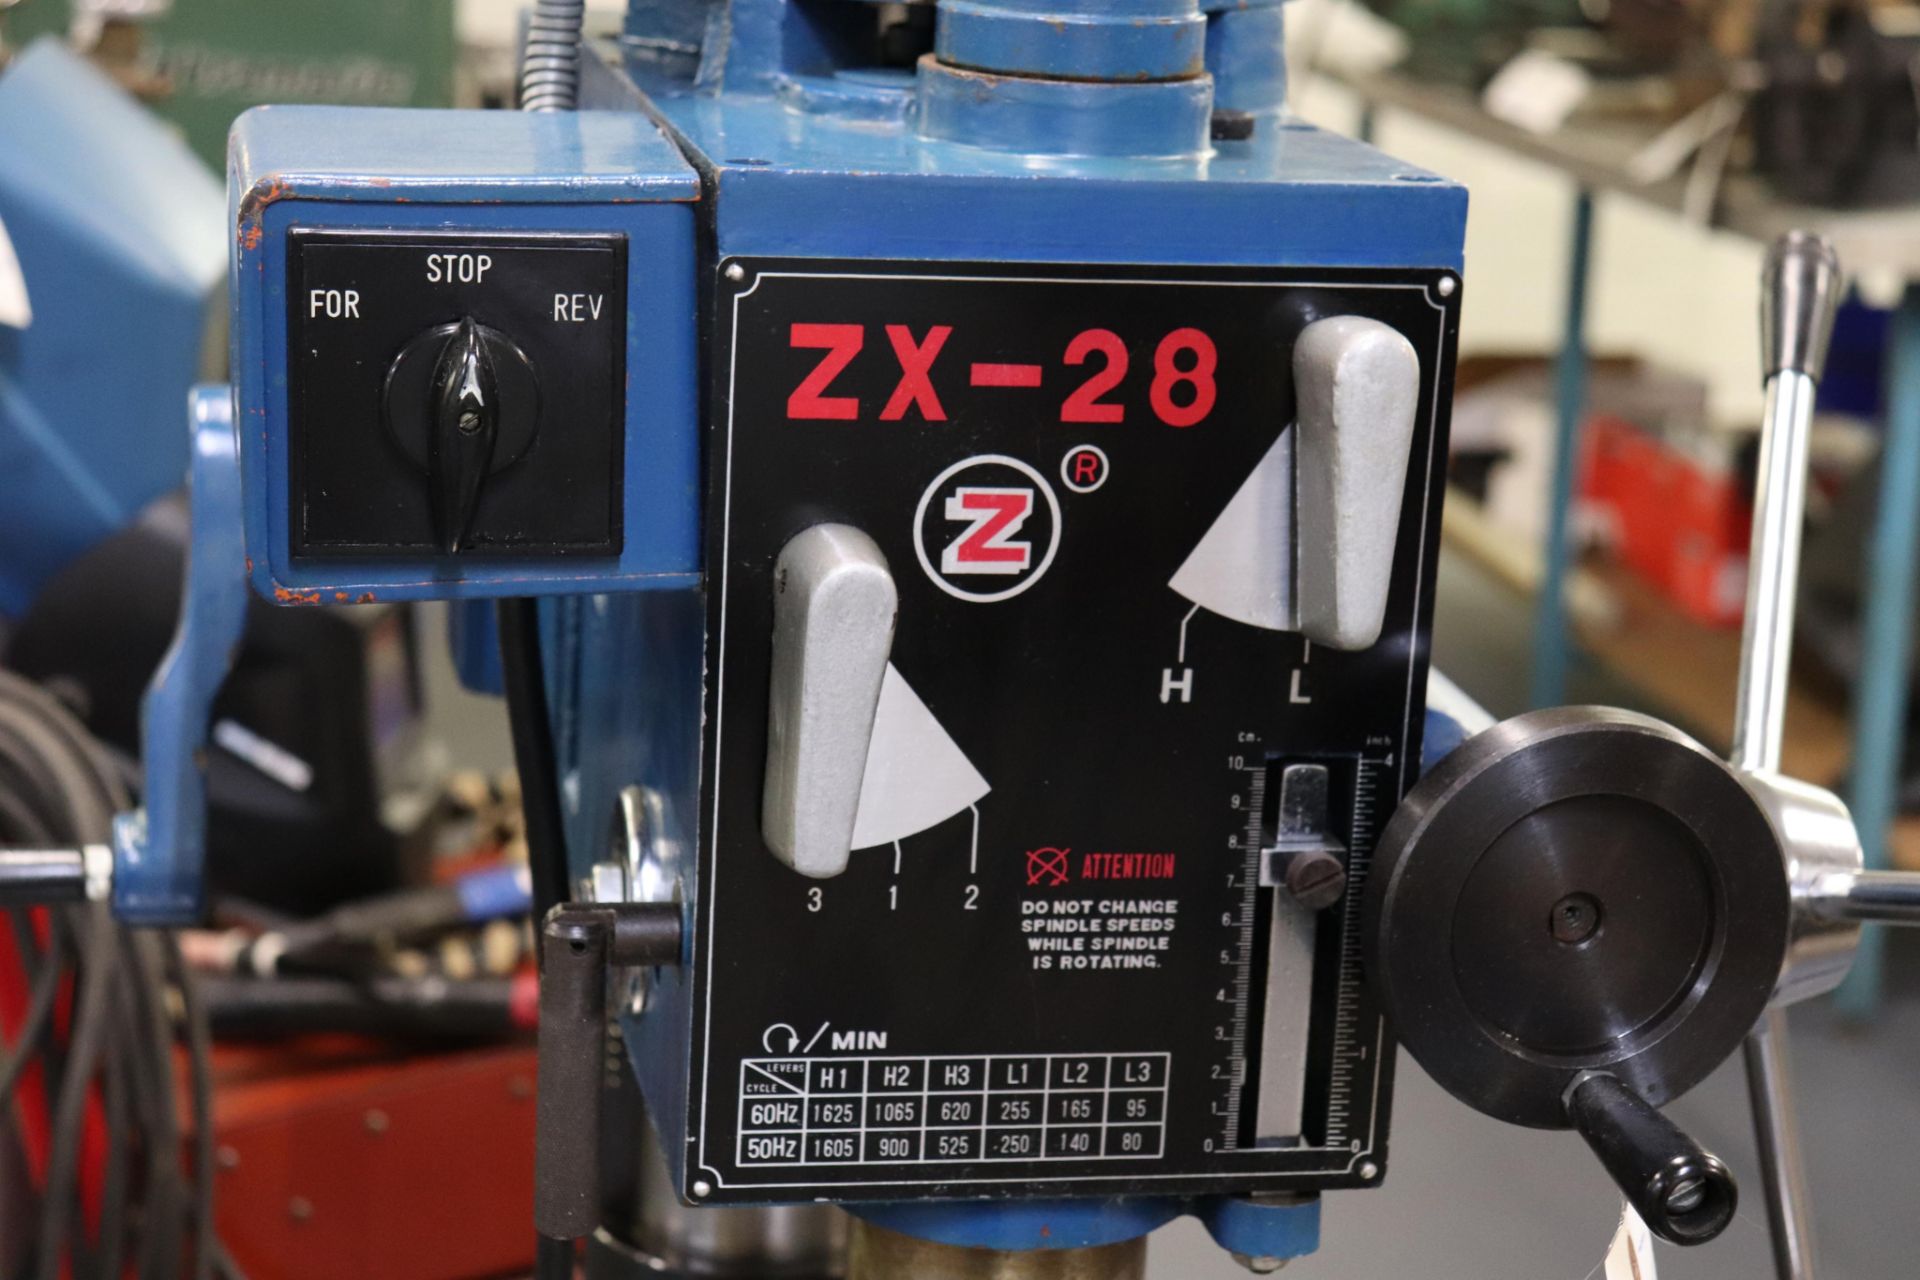 Motor-Car Gear Factory ZX-28 vertical milling machine - Bild 4 aus 7